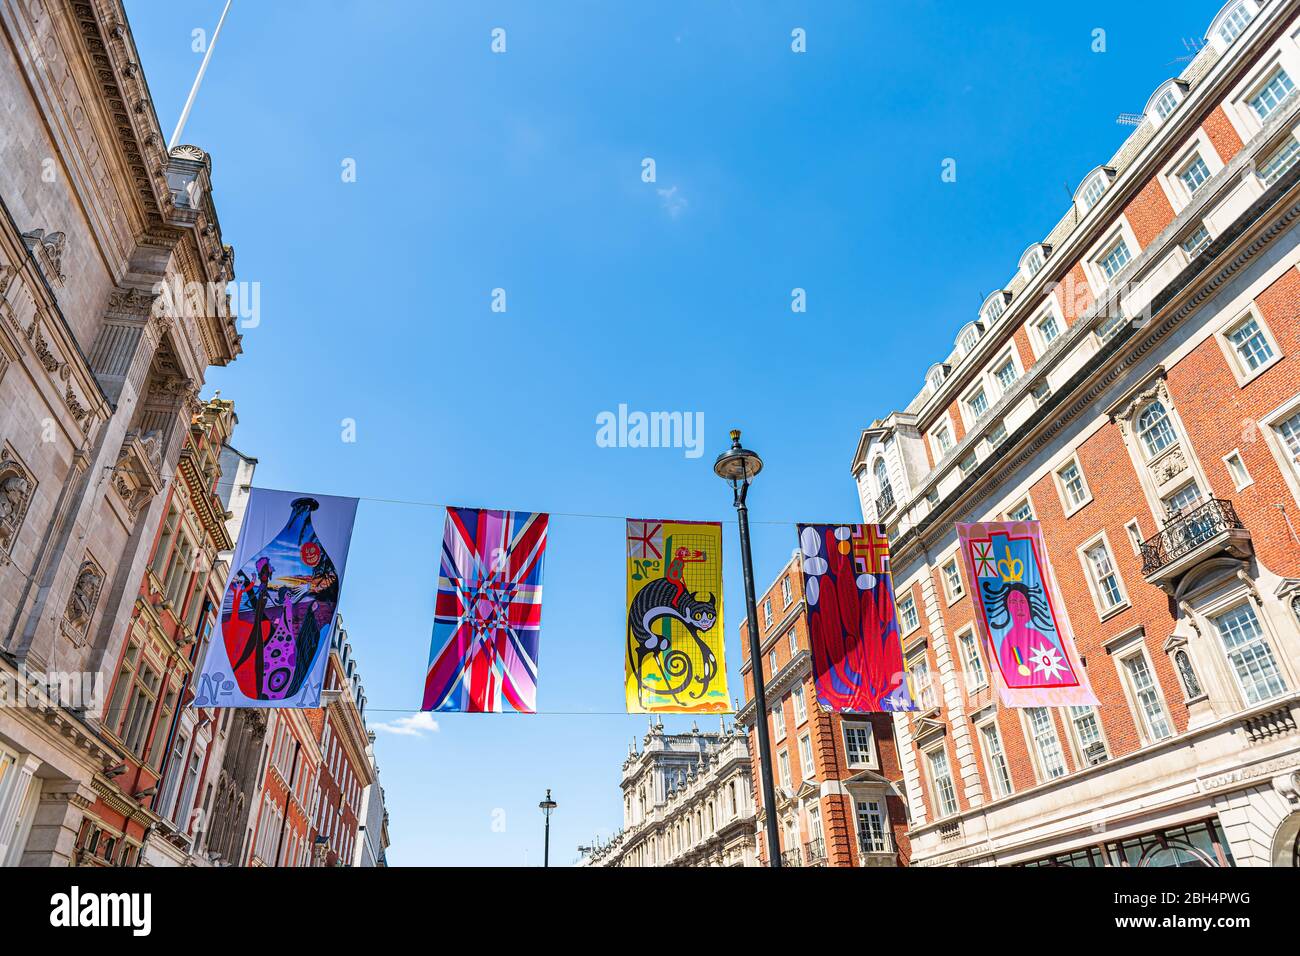 Londra, UK - 22 giugno 2018: Strada del circo Piccadilly con Accademia reale delle arti mostra striscioni contro il cielo blu e architettura storica al sole Foto Stock